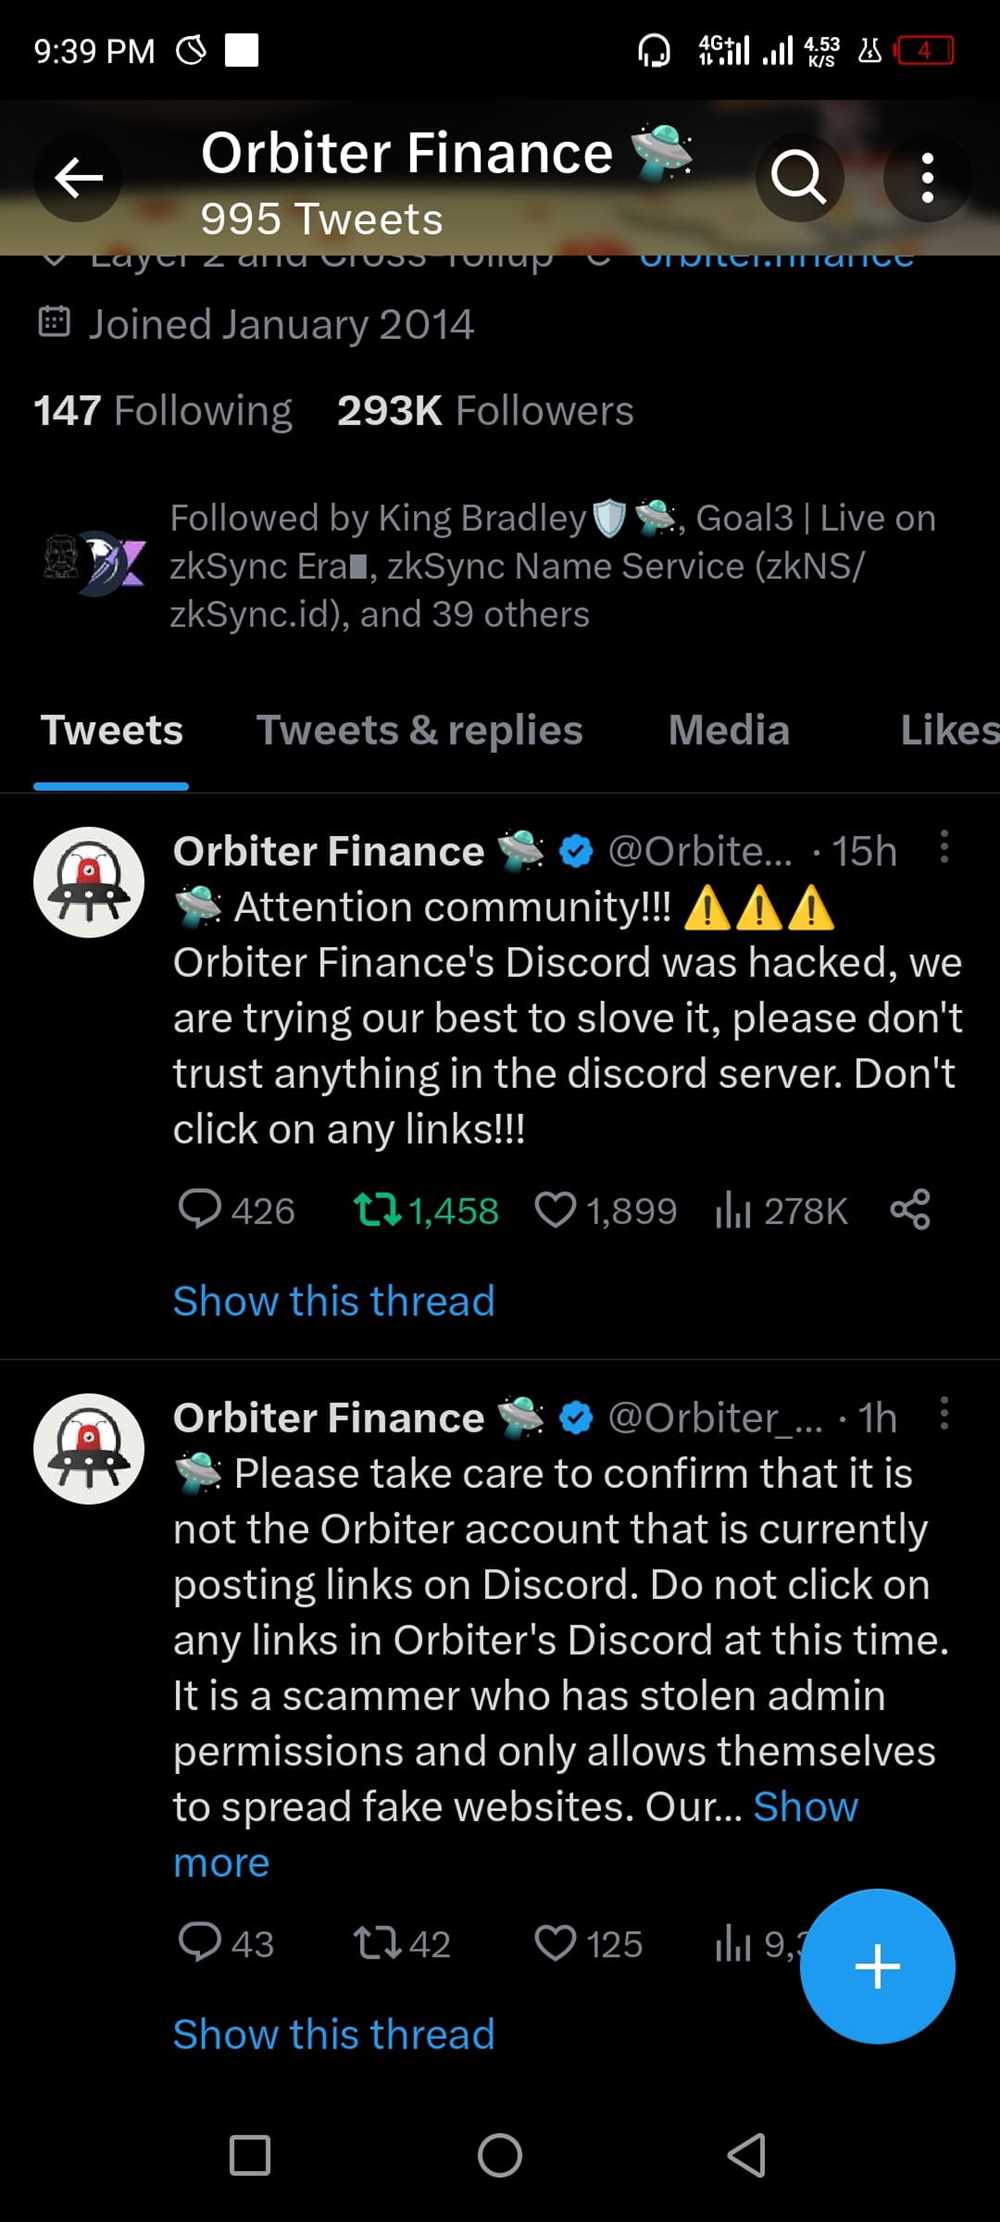 Response from Orbiter Finance